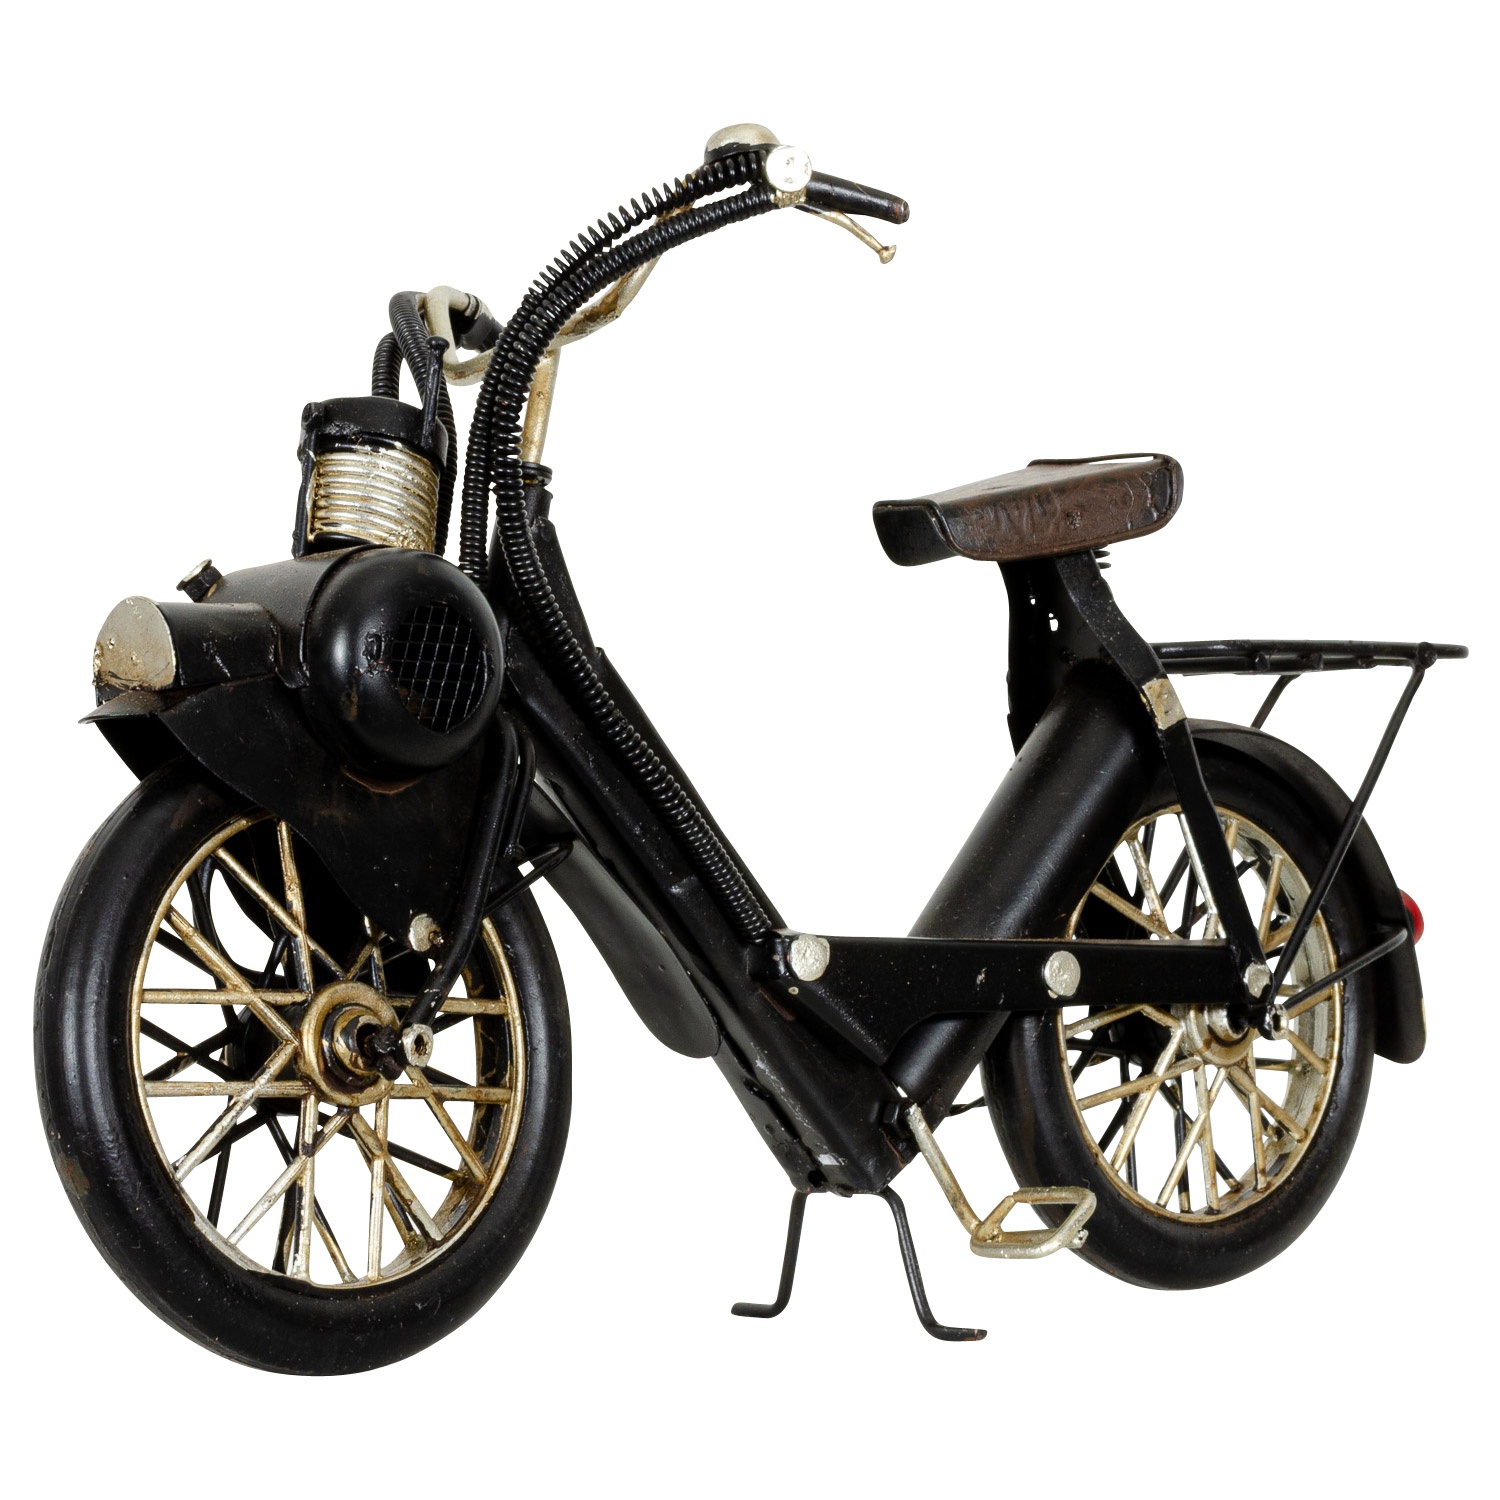 Modell Fahrrad Mofa Mofamodell Moped Nostalgie Blech Metall Antik-Stil ... - BL 243 3